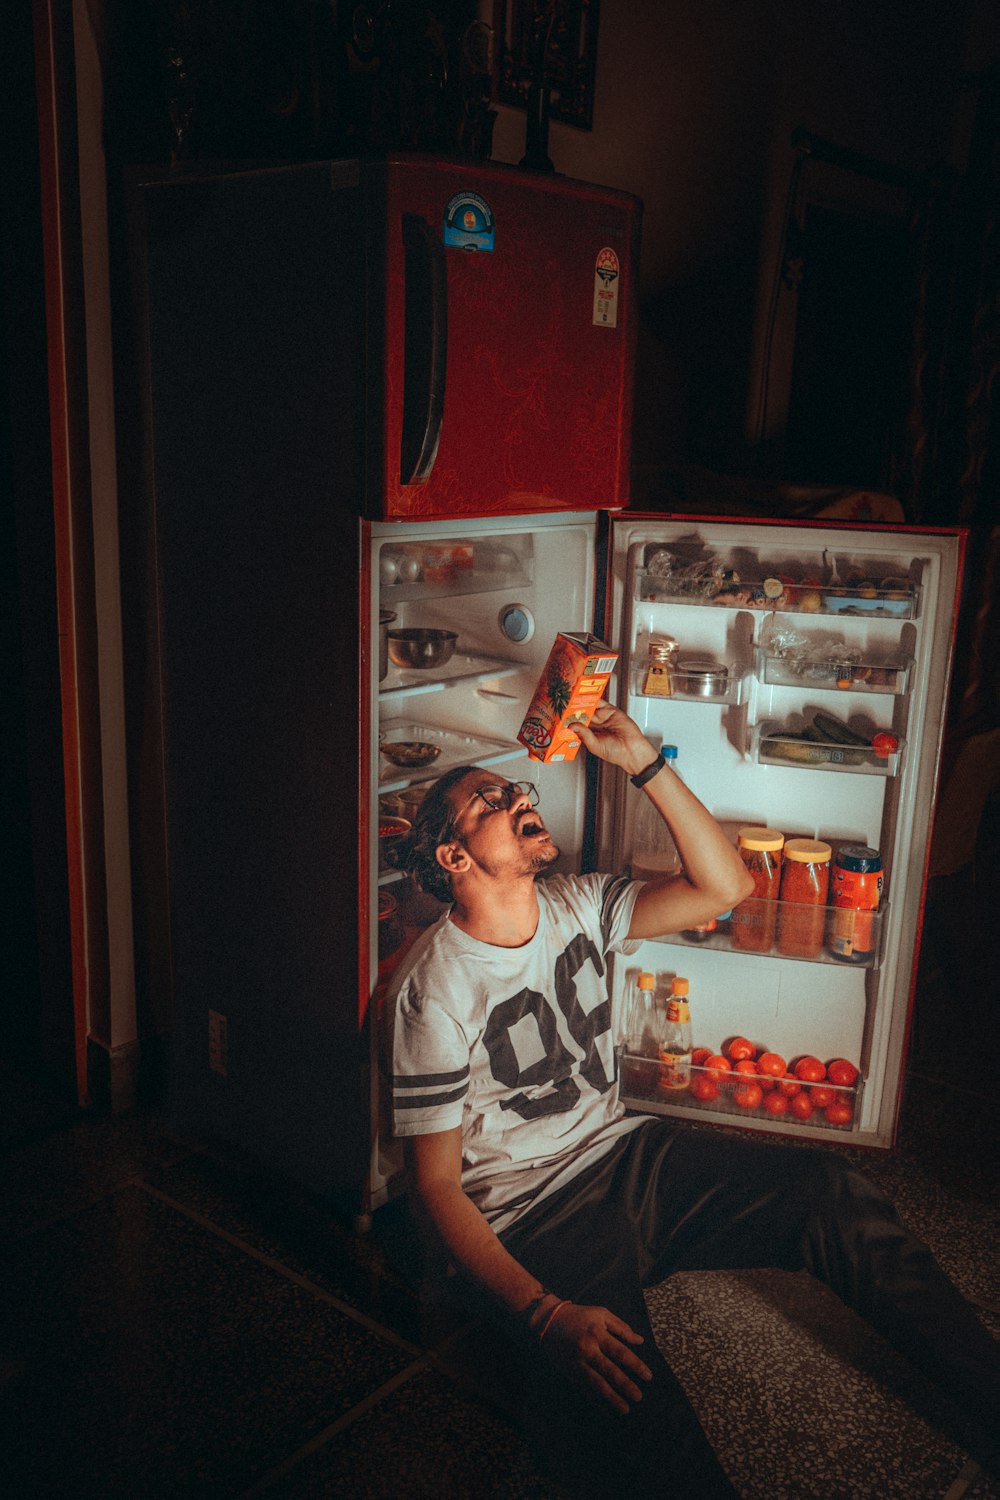 Chico en camiseta sin mangas blanca y negra de pie junto al refrigerador de montaje superior rojo